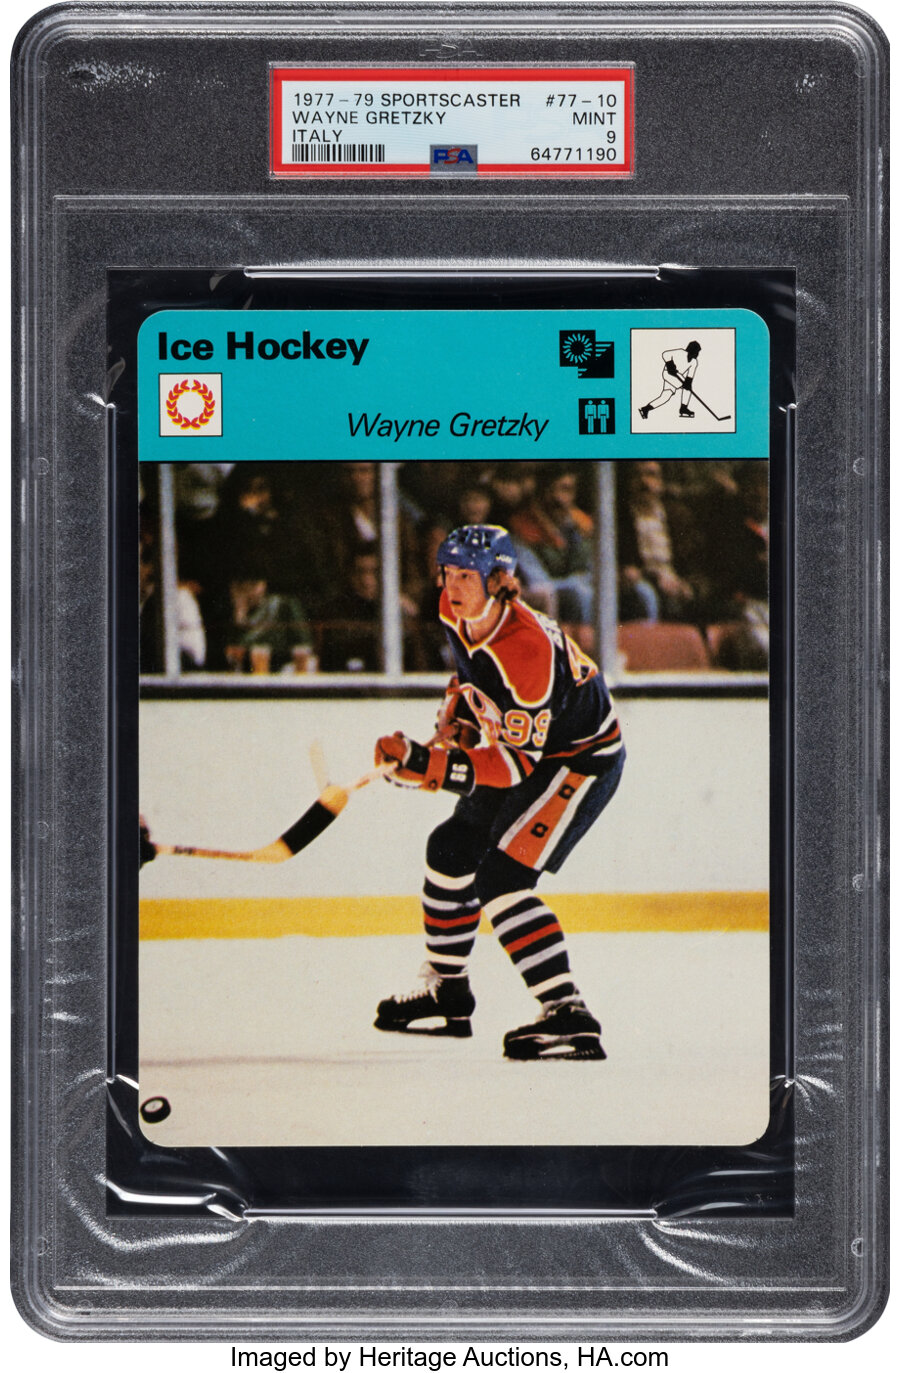 1977-79 Sportscaster Wayne Gretzky #77-10 PSA Mint 9